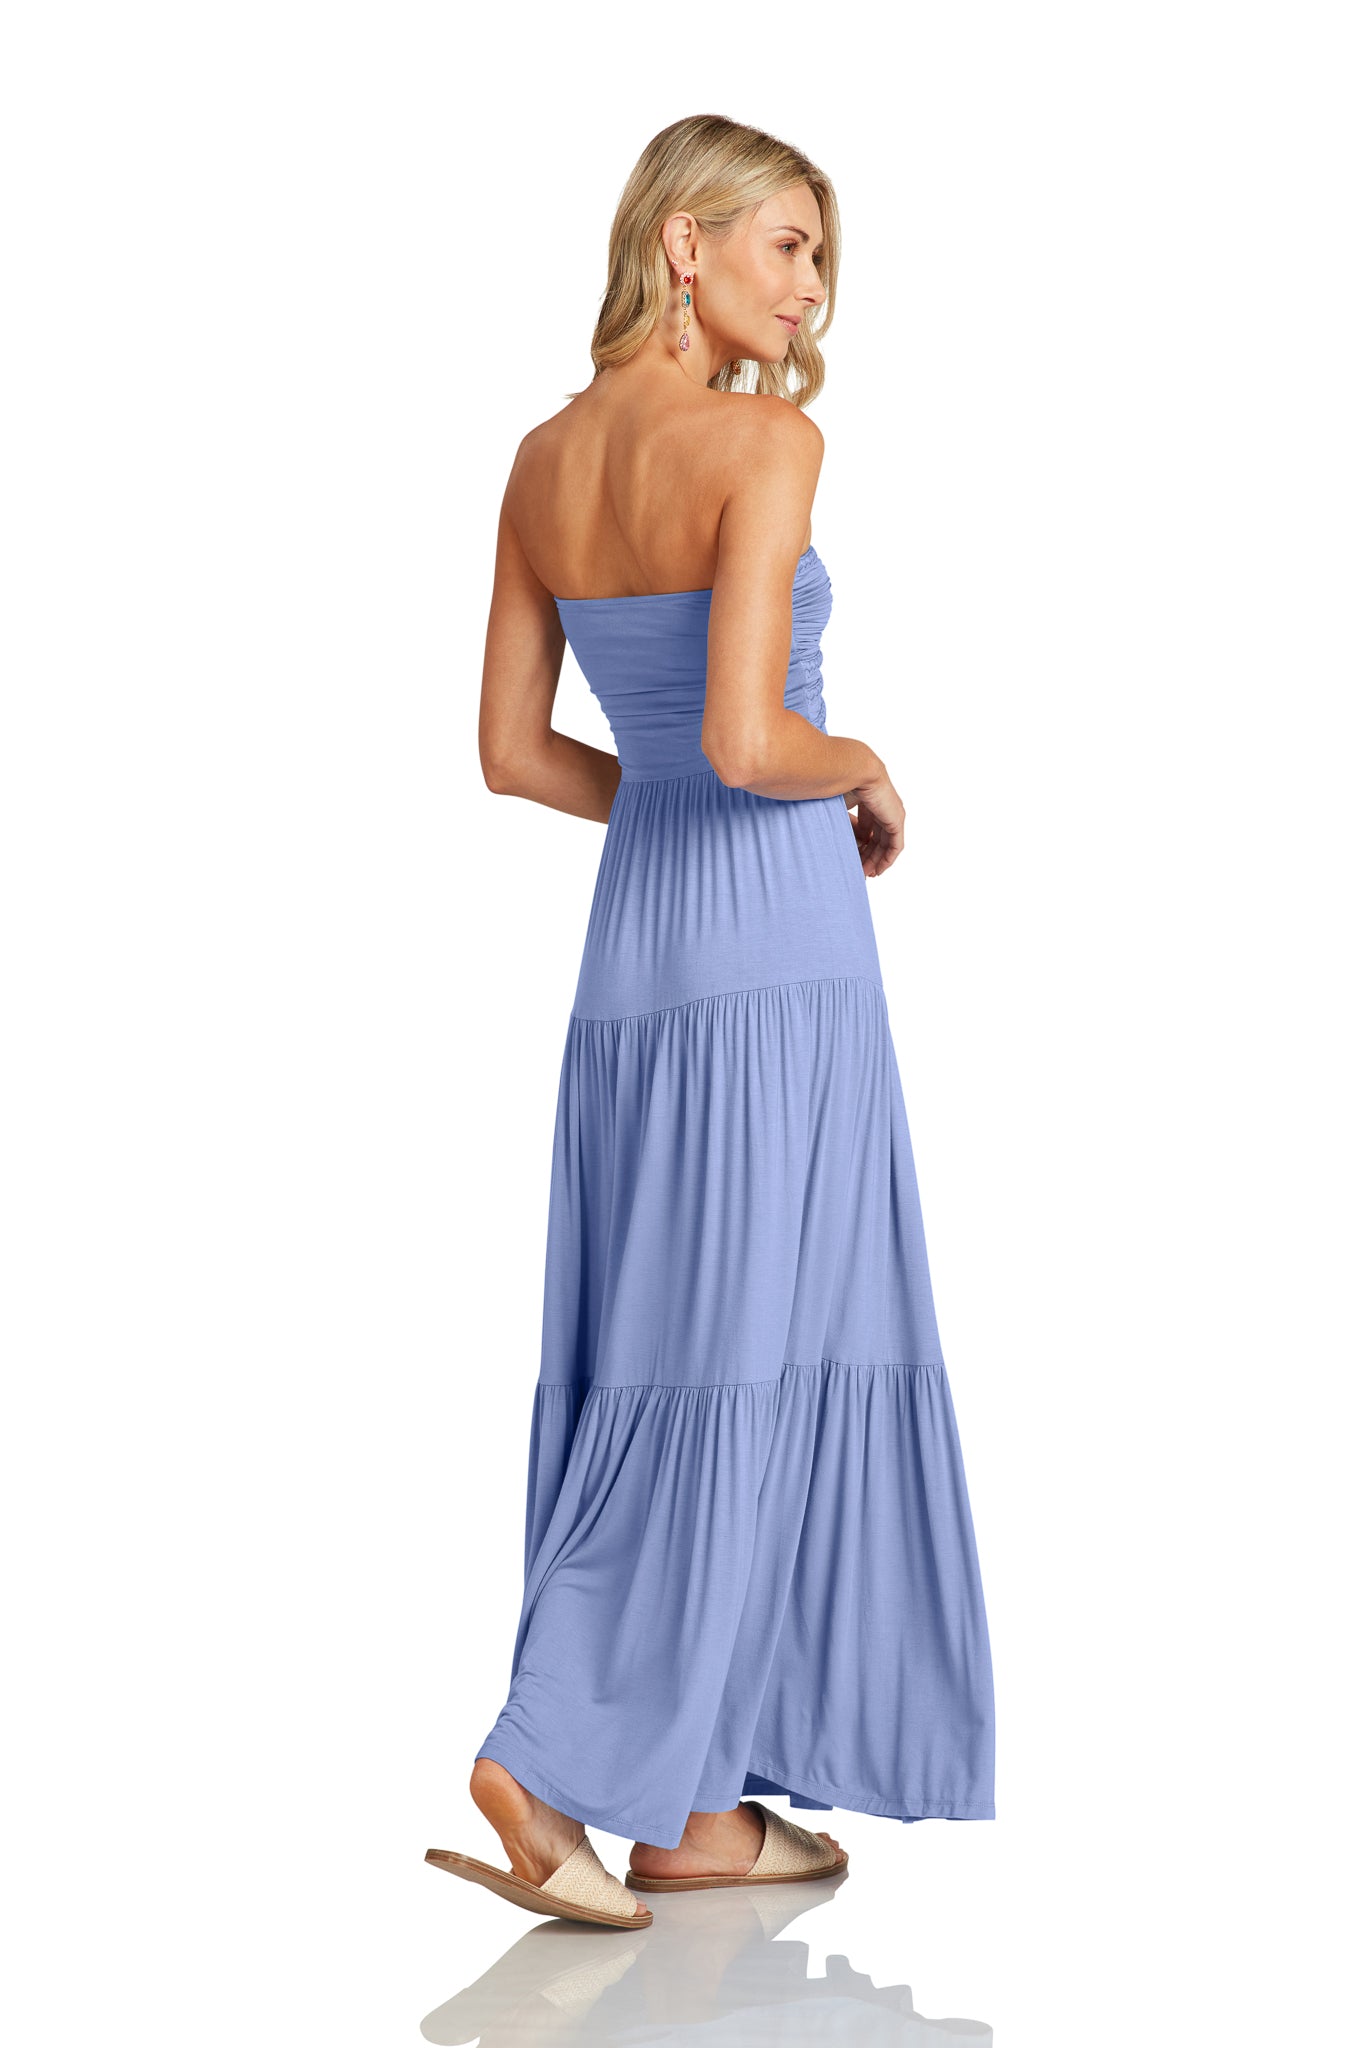 $99.99 DRESS EVENT LUCILLE MAXI DRESS CORNFLOWER BLUE